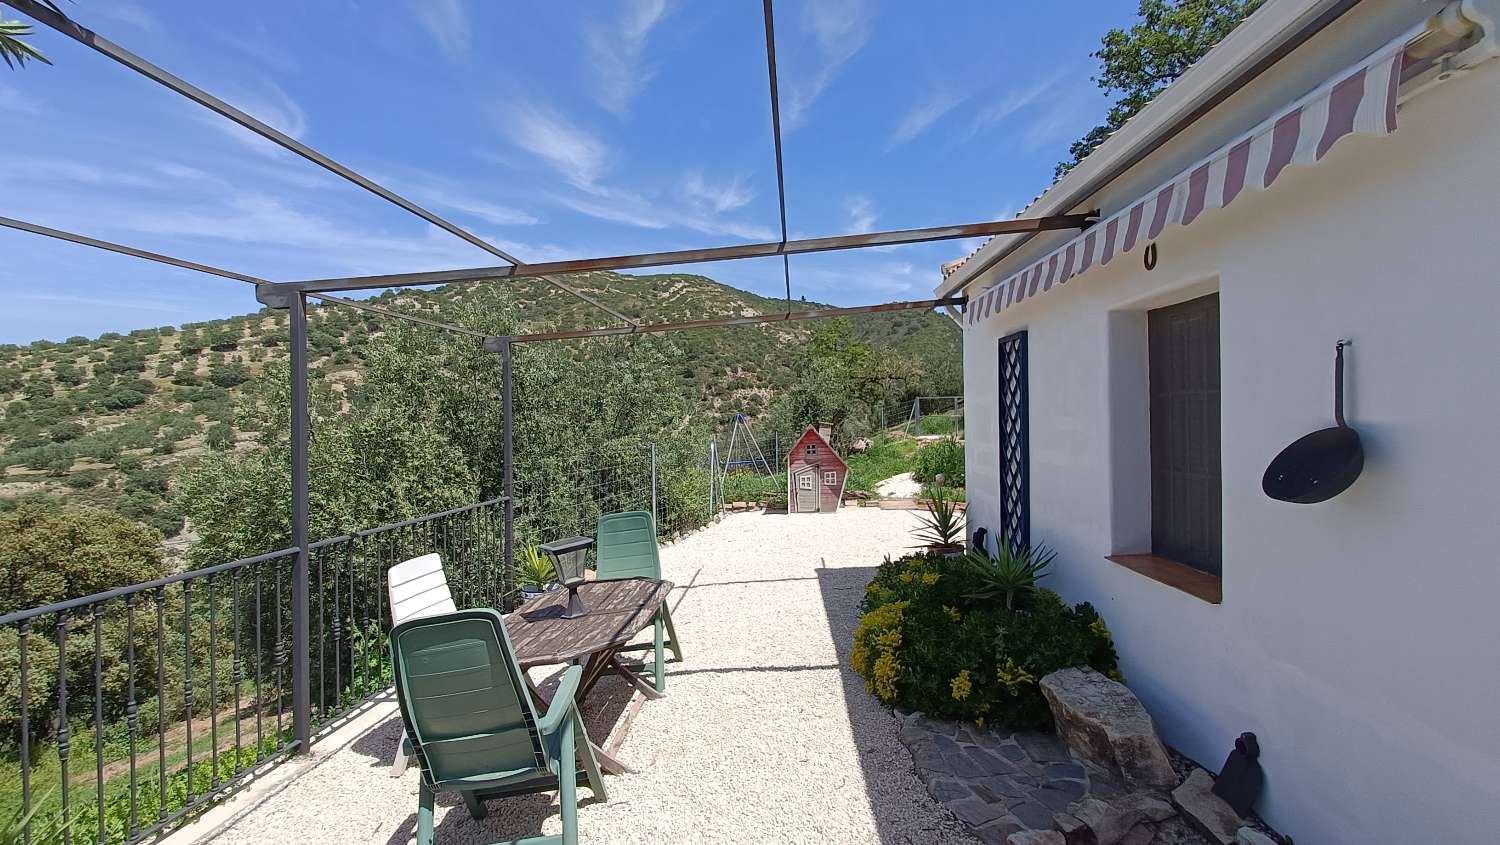 Karakteristisk andalusisk gårdsstil med 2 separate leiligheter